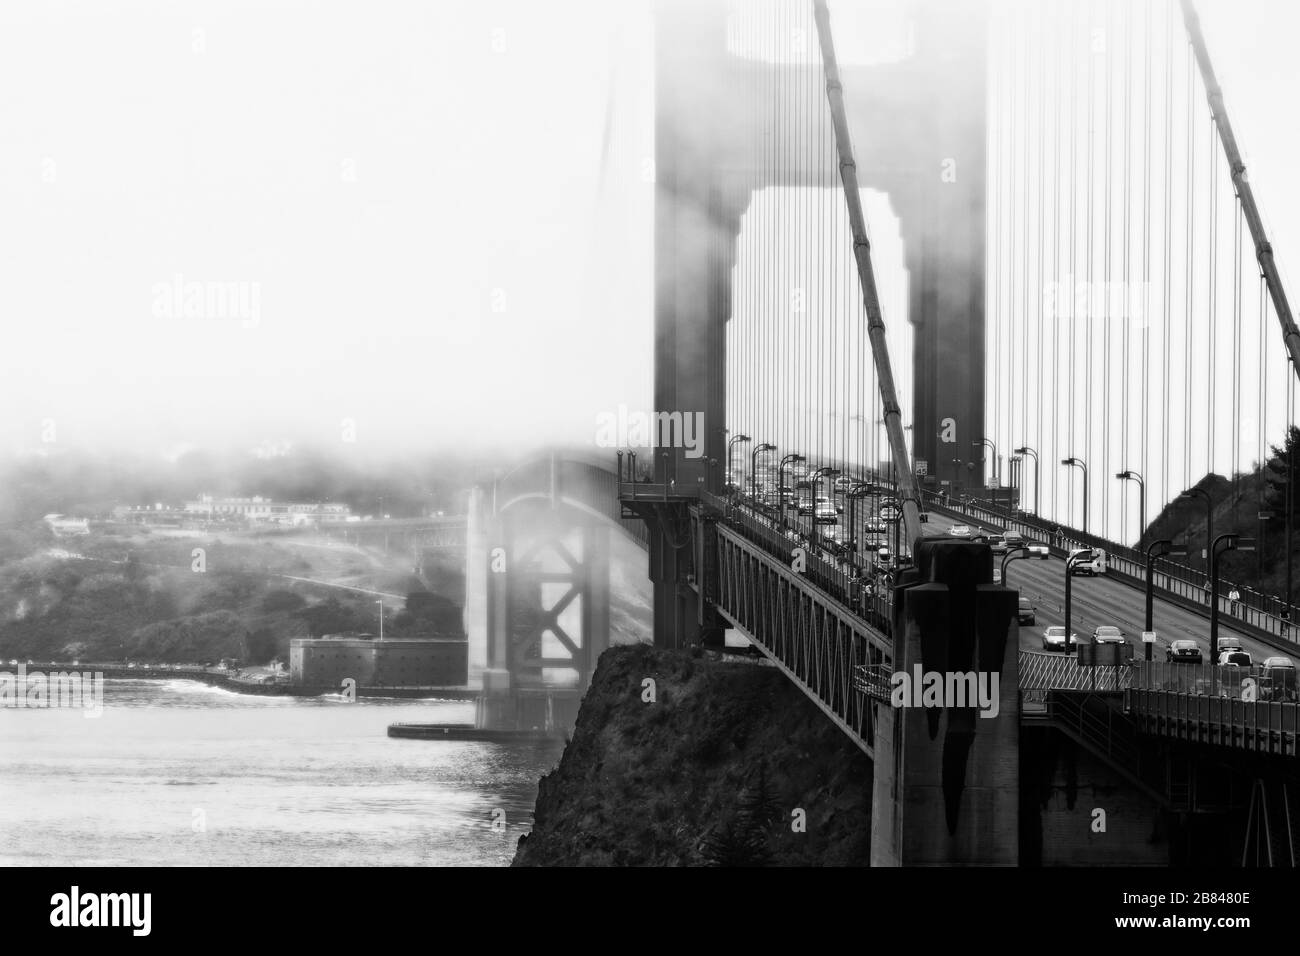 Nebel vor der Bucht umhüllt die Golden Gate Bridge und Presidio, San Francisco, Kalifornien, Vereinigte Staaten, Nordamerika, Schwarzweiß Stockfoto